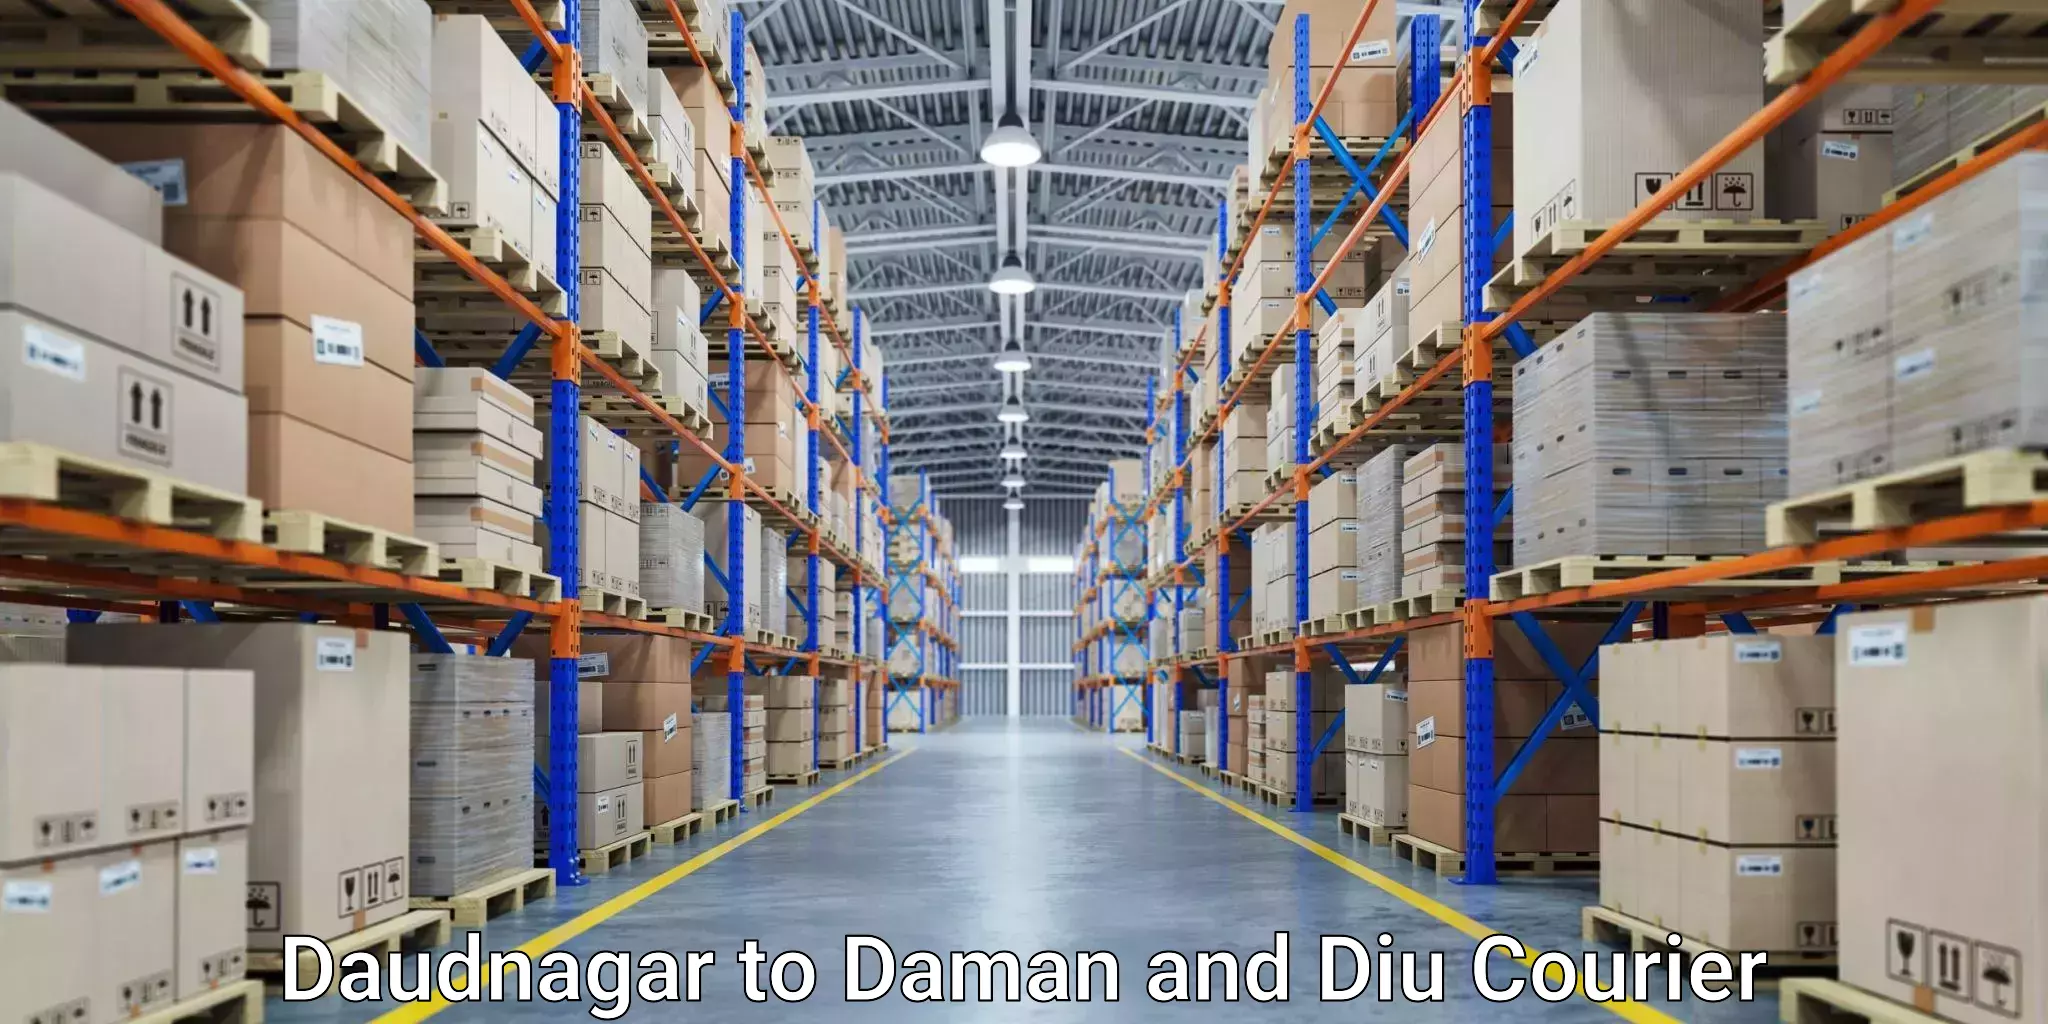 Customizable shipping options Daudnagar to Daman